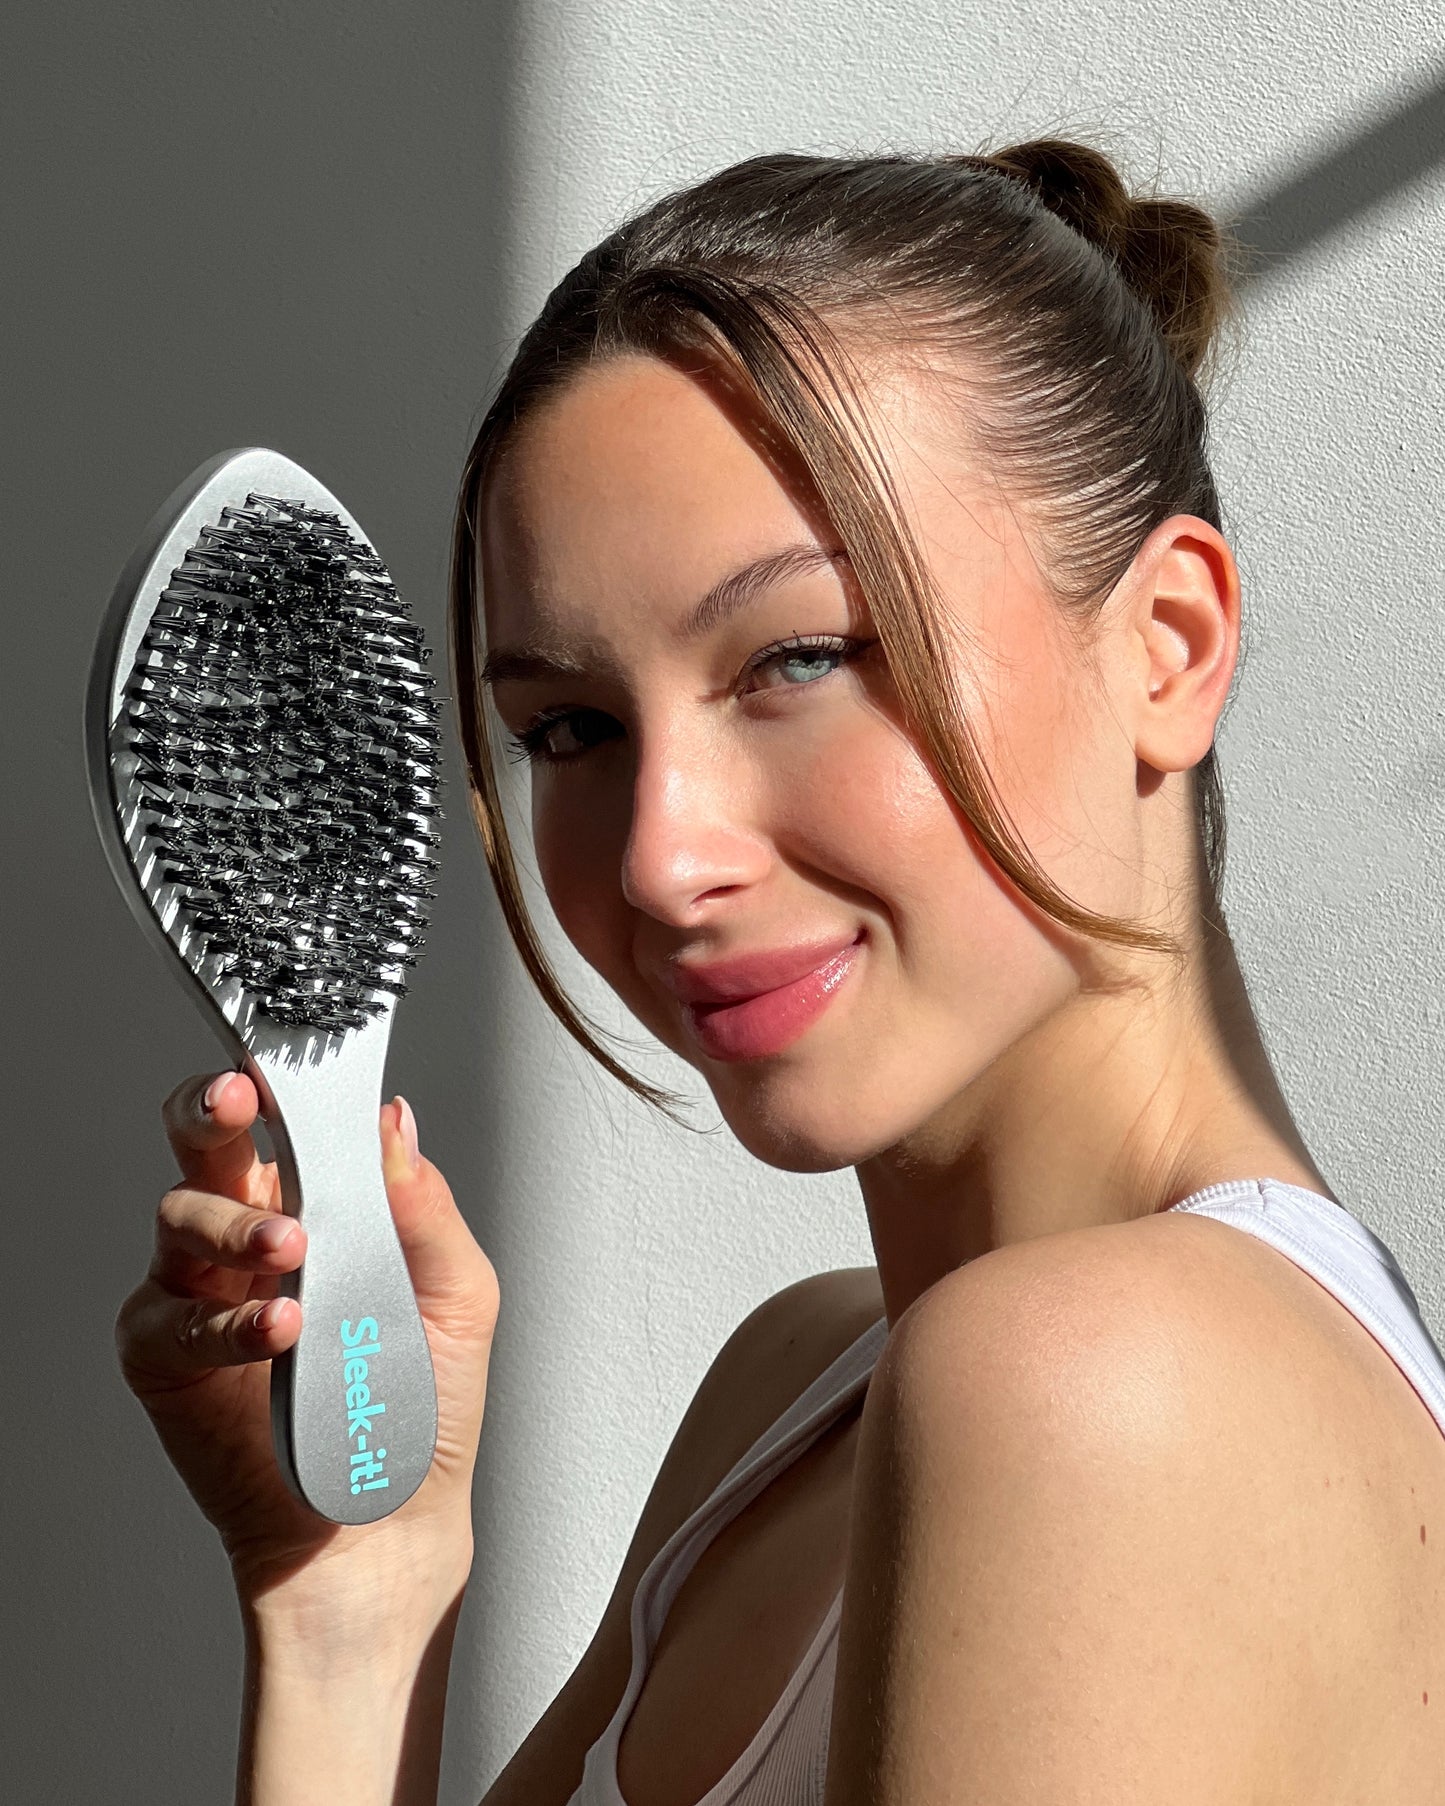 Sleek Brush, Haarbürste / Ansatzbürste für glatte Haare und Sleek hairstyles / Sleek buns / hailey bieber hairstyle bürste / kamm / sleek look 